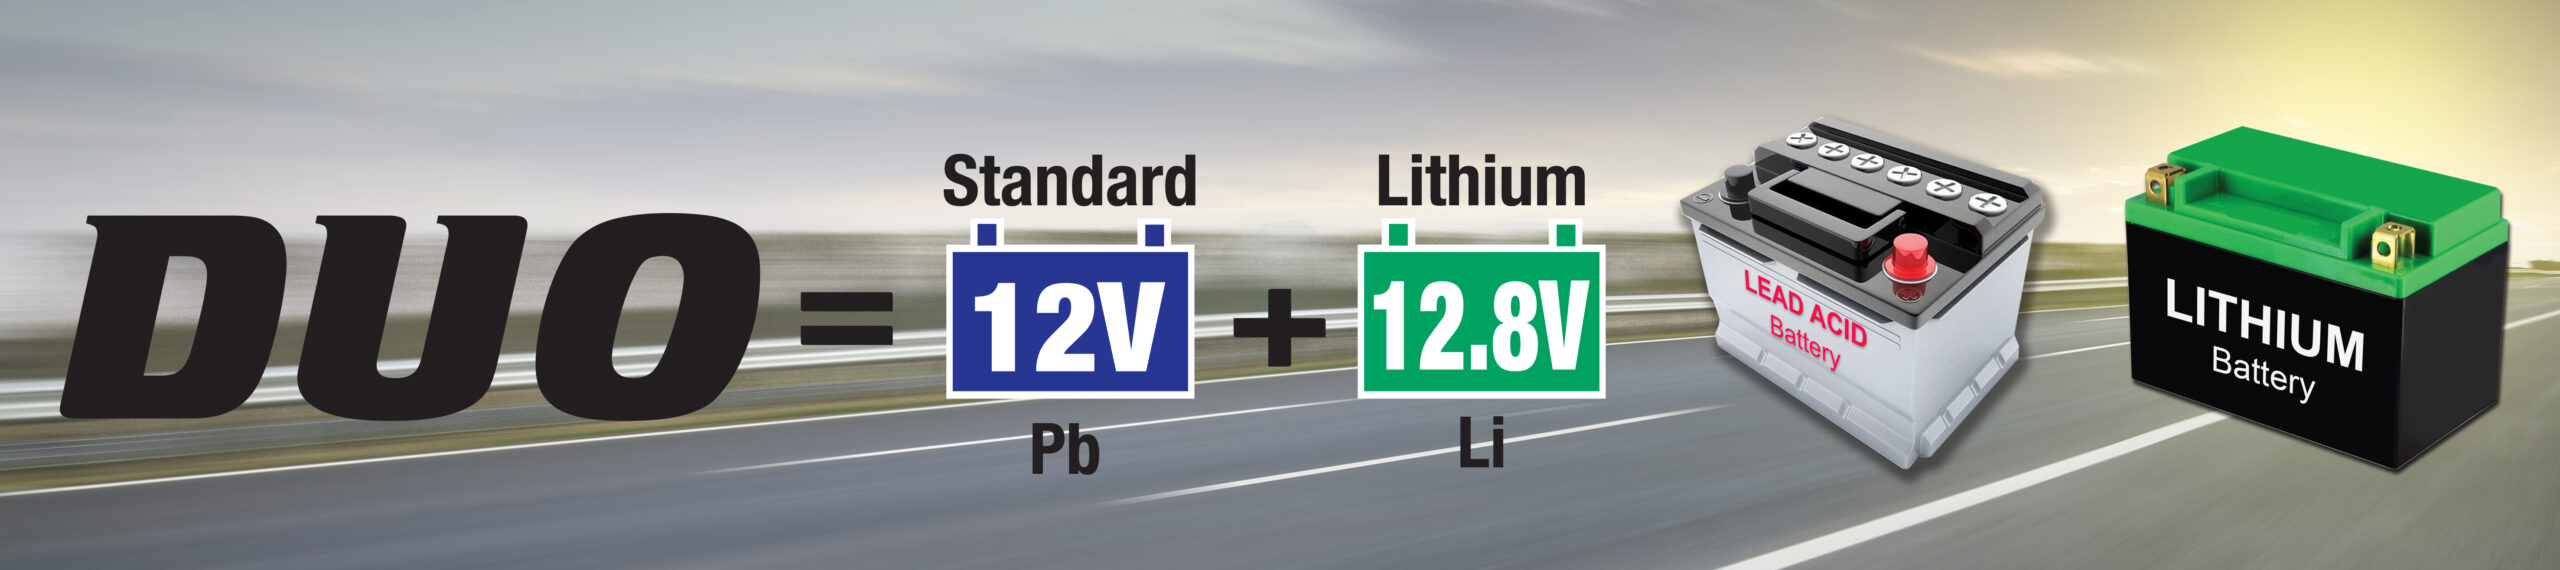 DUO bedeutet Standard 12V Pb und Lithium 12.8V Li